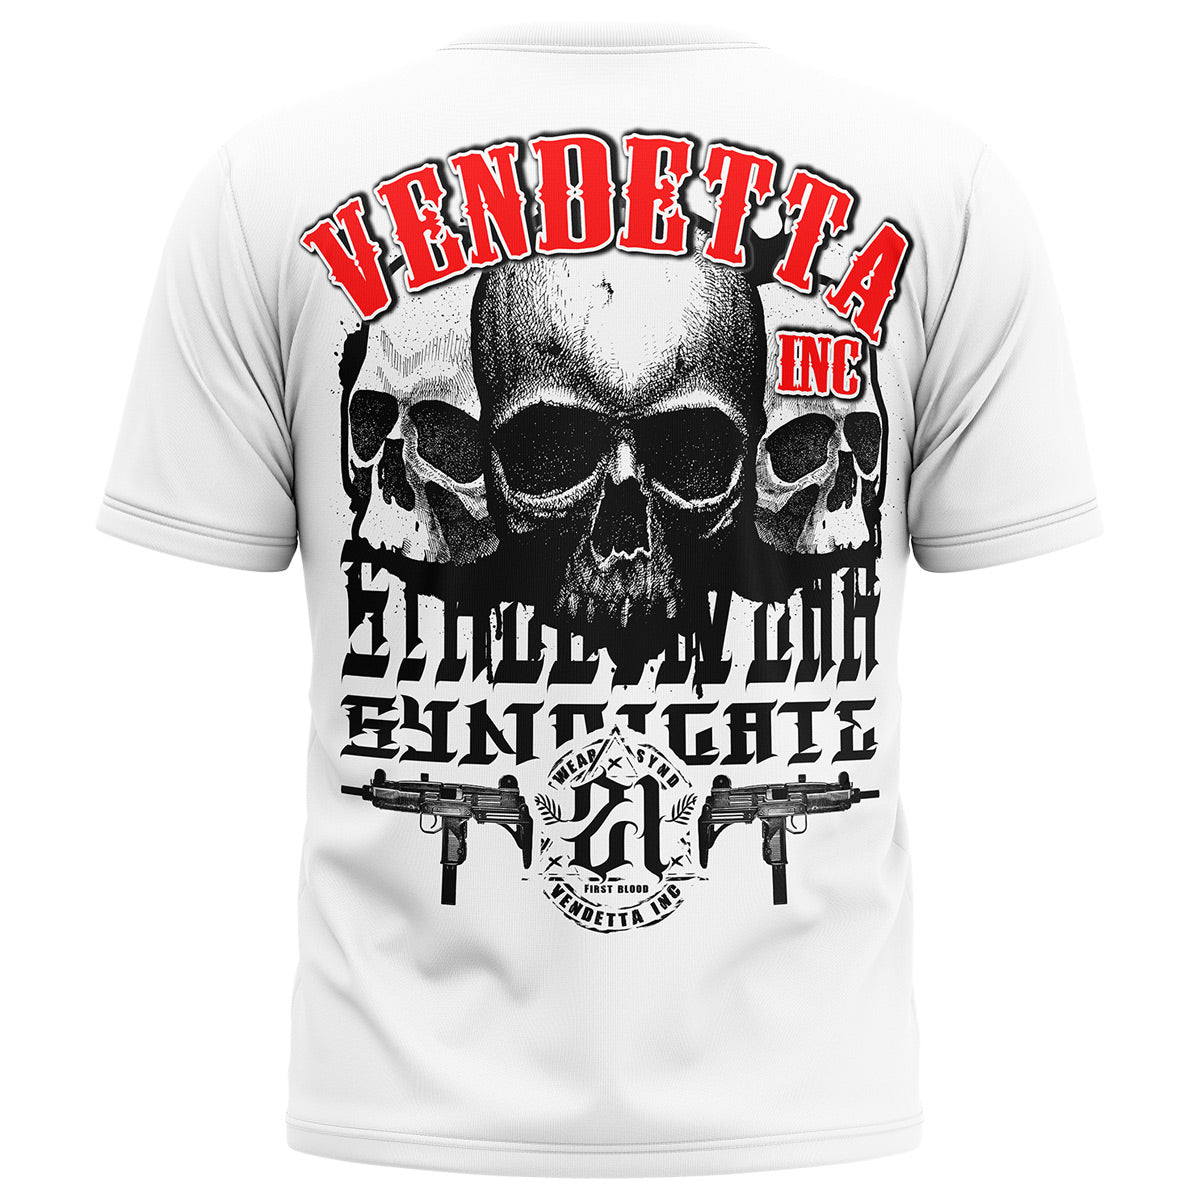 Vendetta Inc. Shirt weiß threes Skull